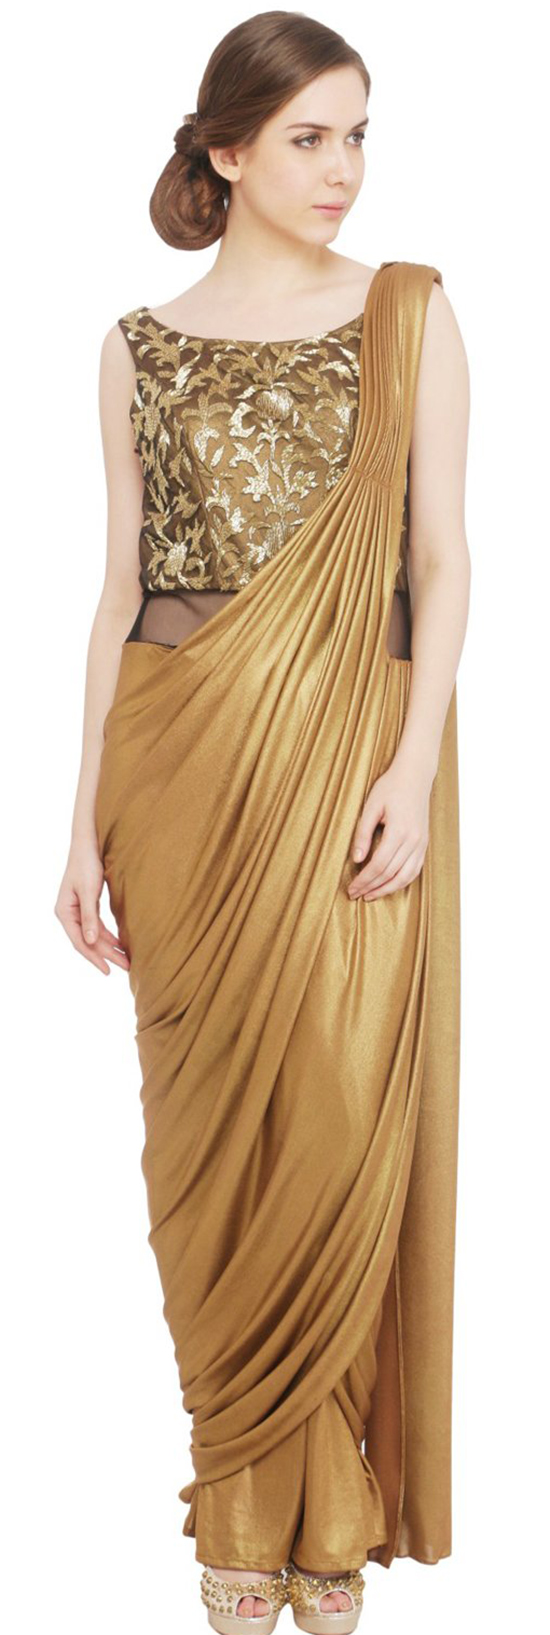 Antique Gold Drape Saree Gown Front